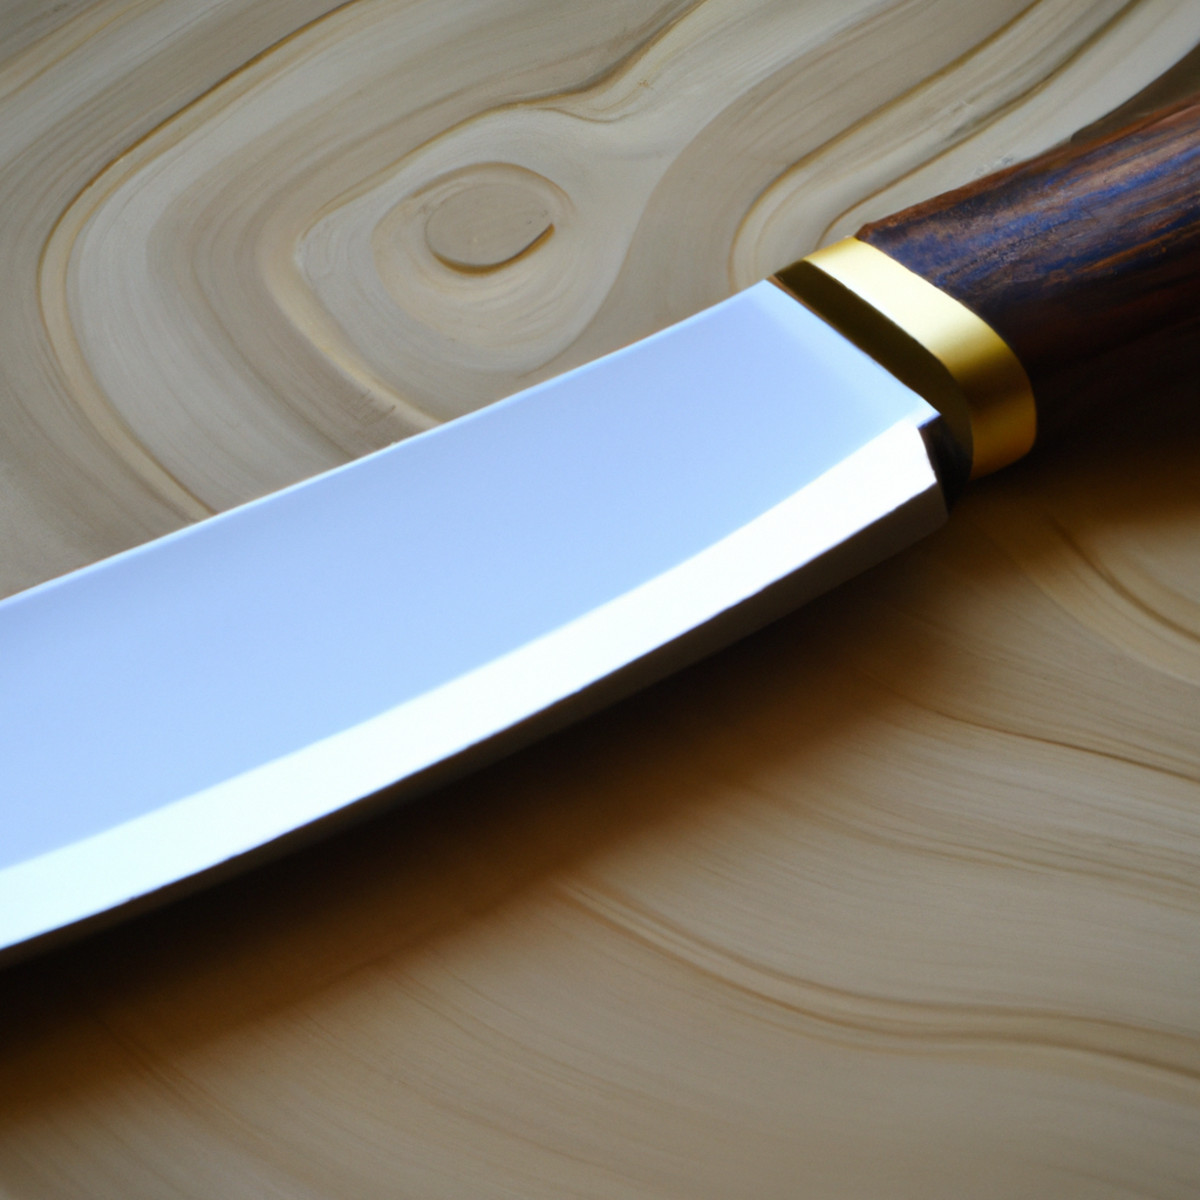 Завршна обрада Мигаки ножа - фино полирана за глатку софистицираност